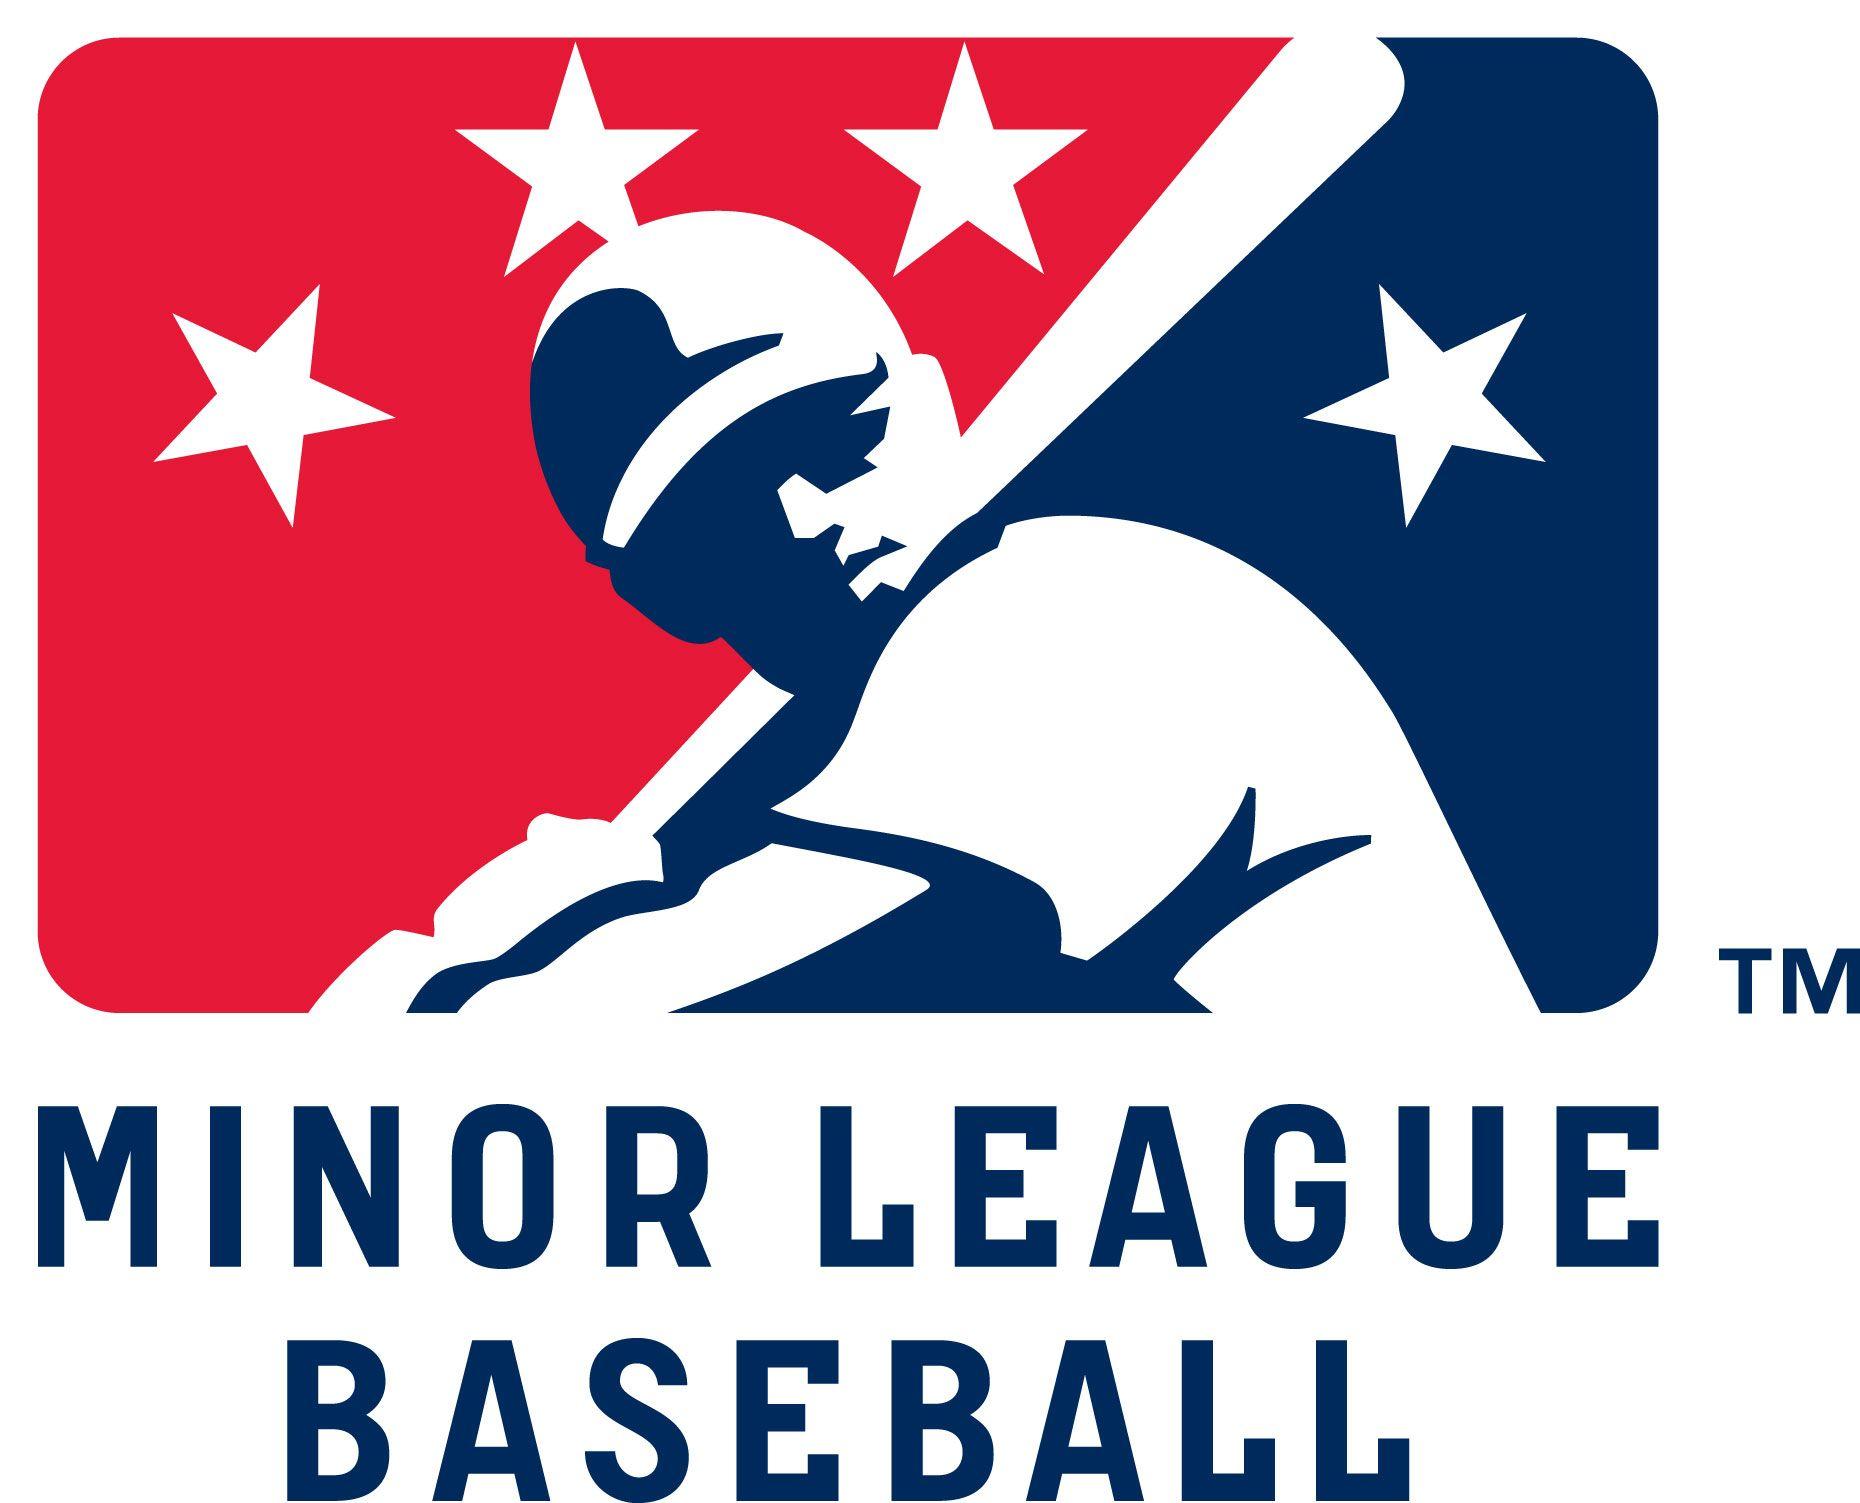 Major League Baseball Logo - Minor League Baseball. Logos. Minor league